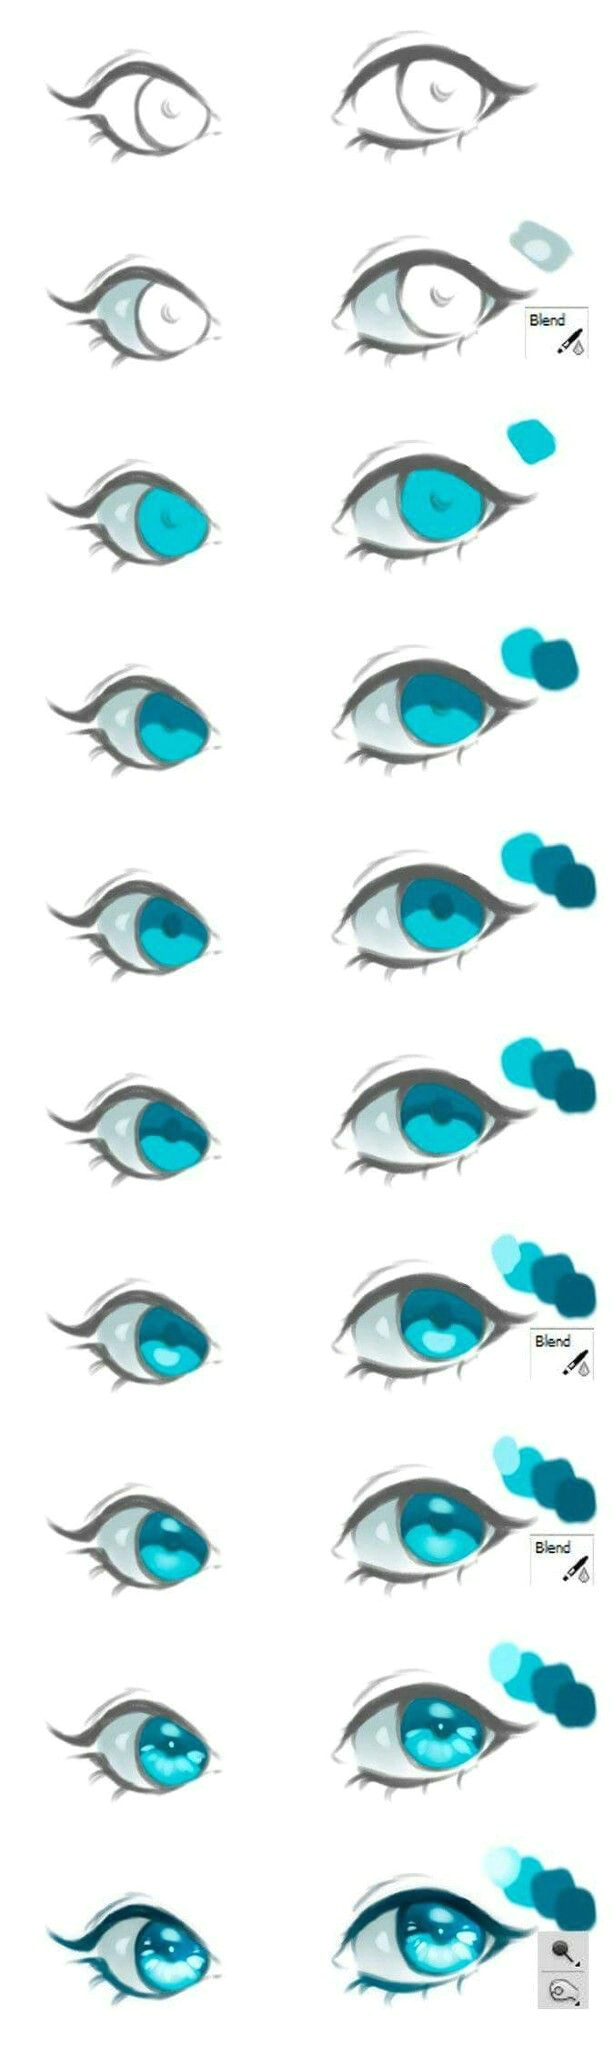 Drawing An Eye Tutorial Easy Eye Tutorial Drawing Help Drawings Art Anime Eyes